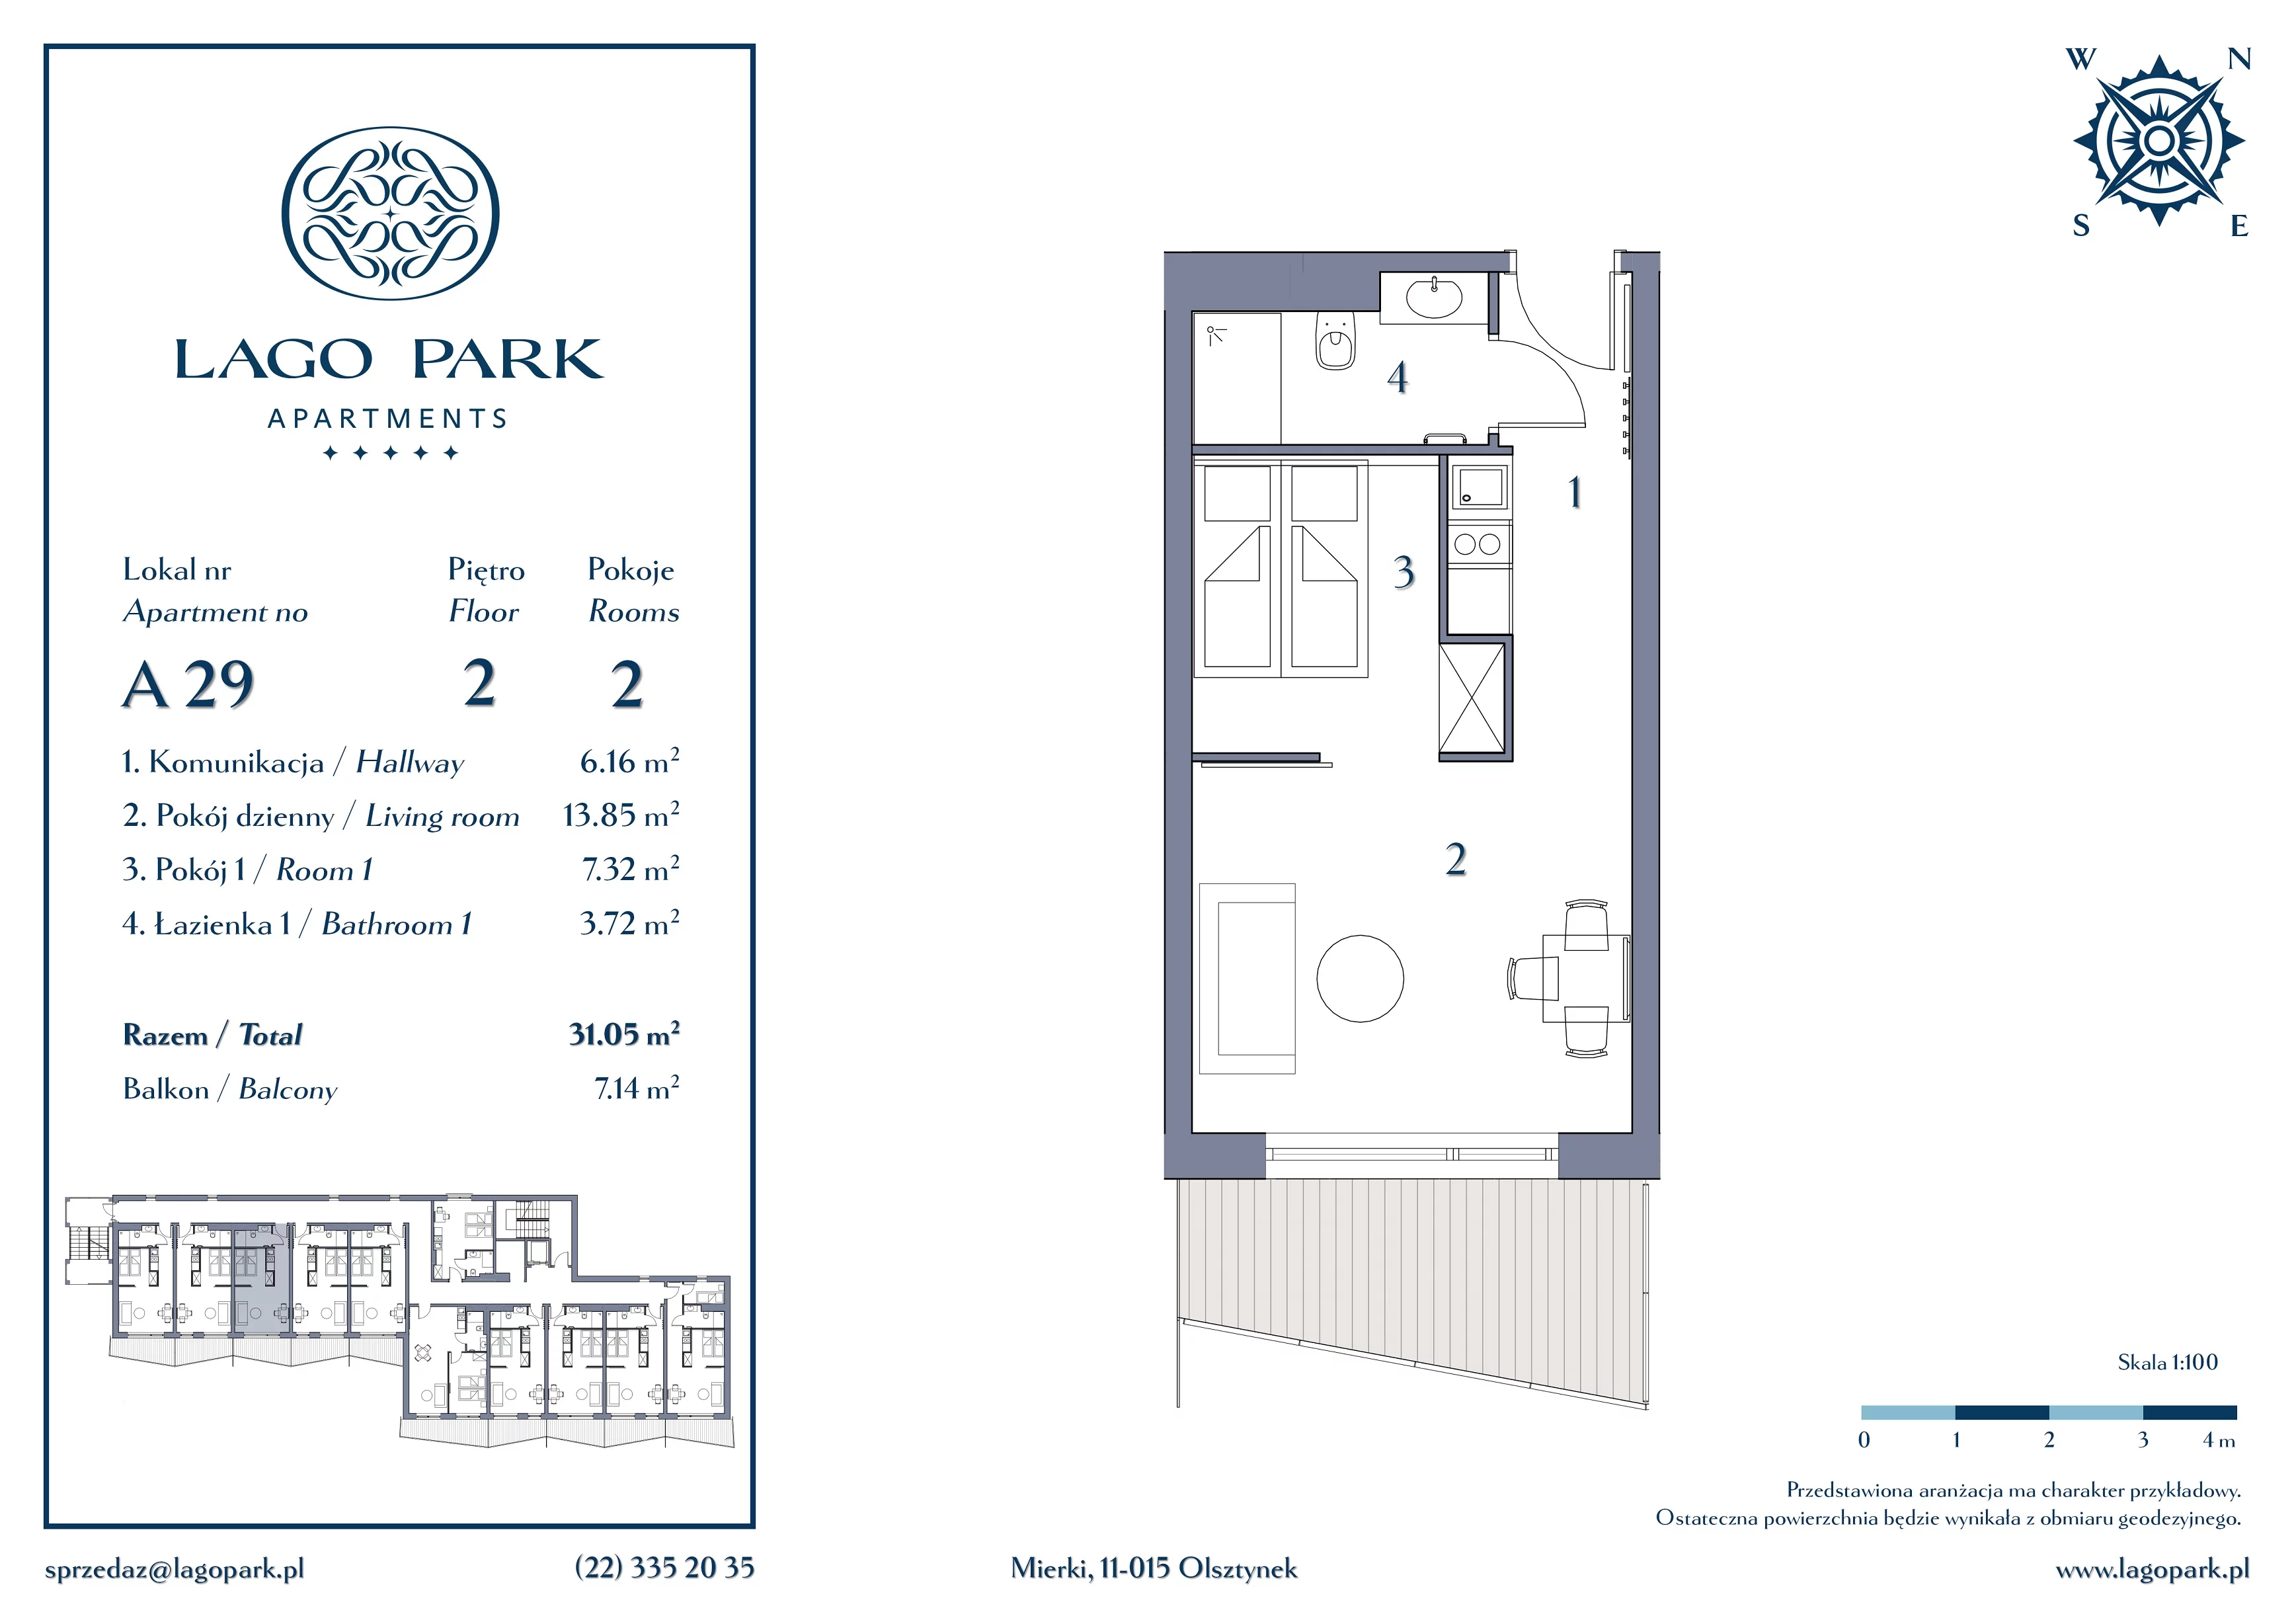 Apartament inwestycyjny 31,05 m², piętro 2, oferta nr A29, Lago Park Apartments by Aries, Mierki, Kołatek 2